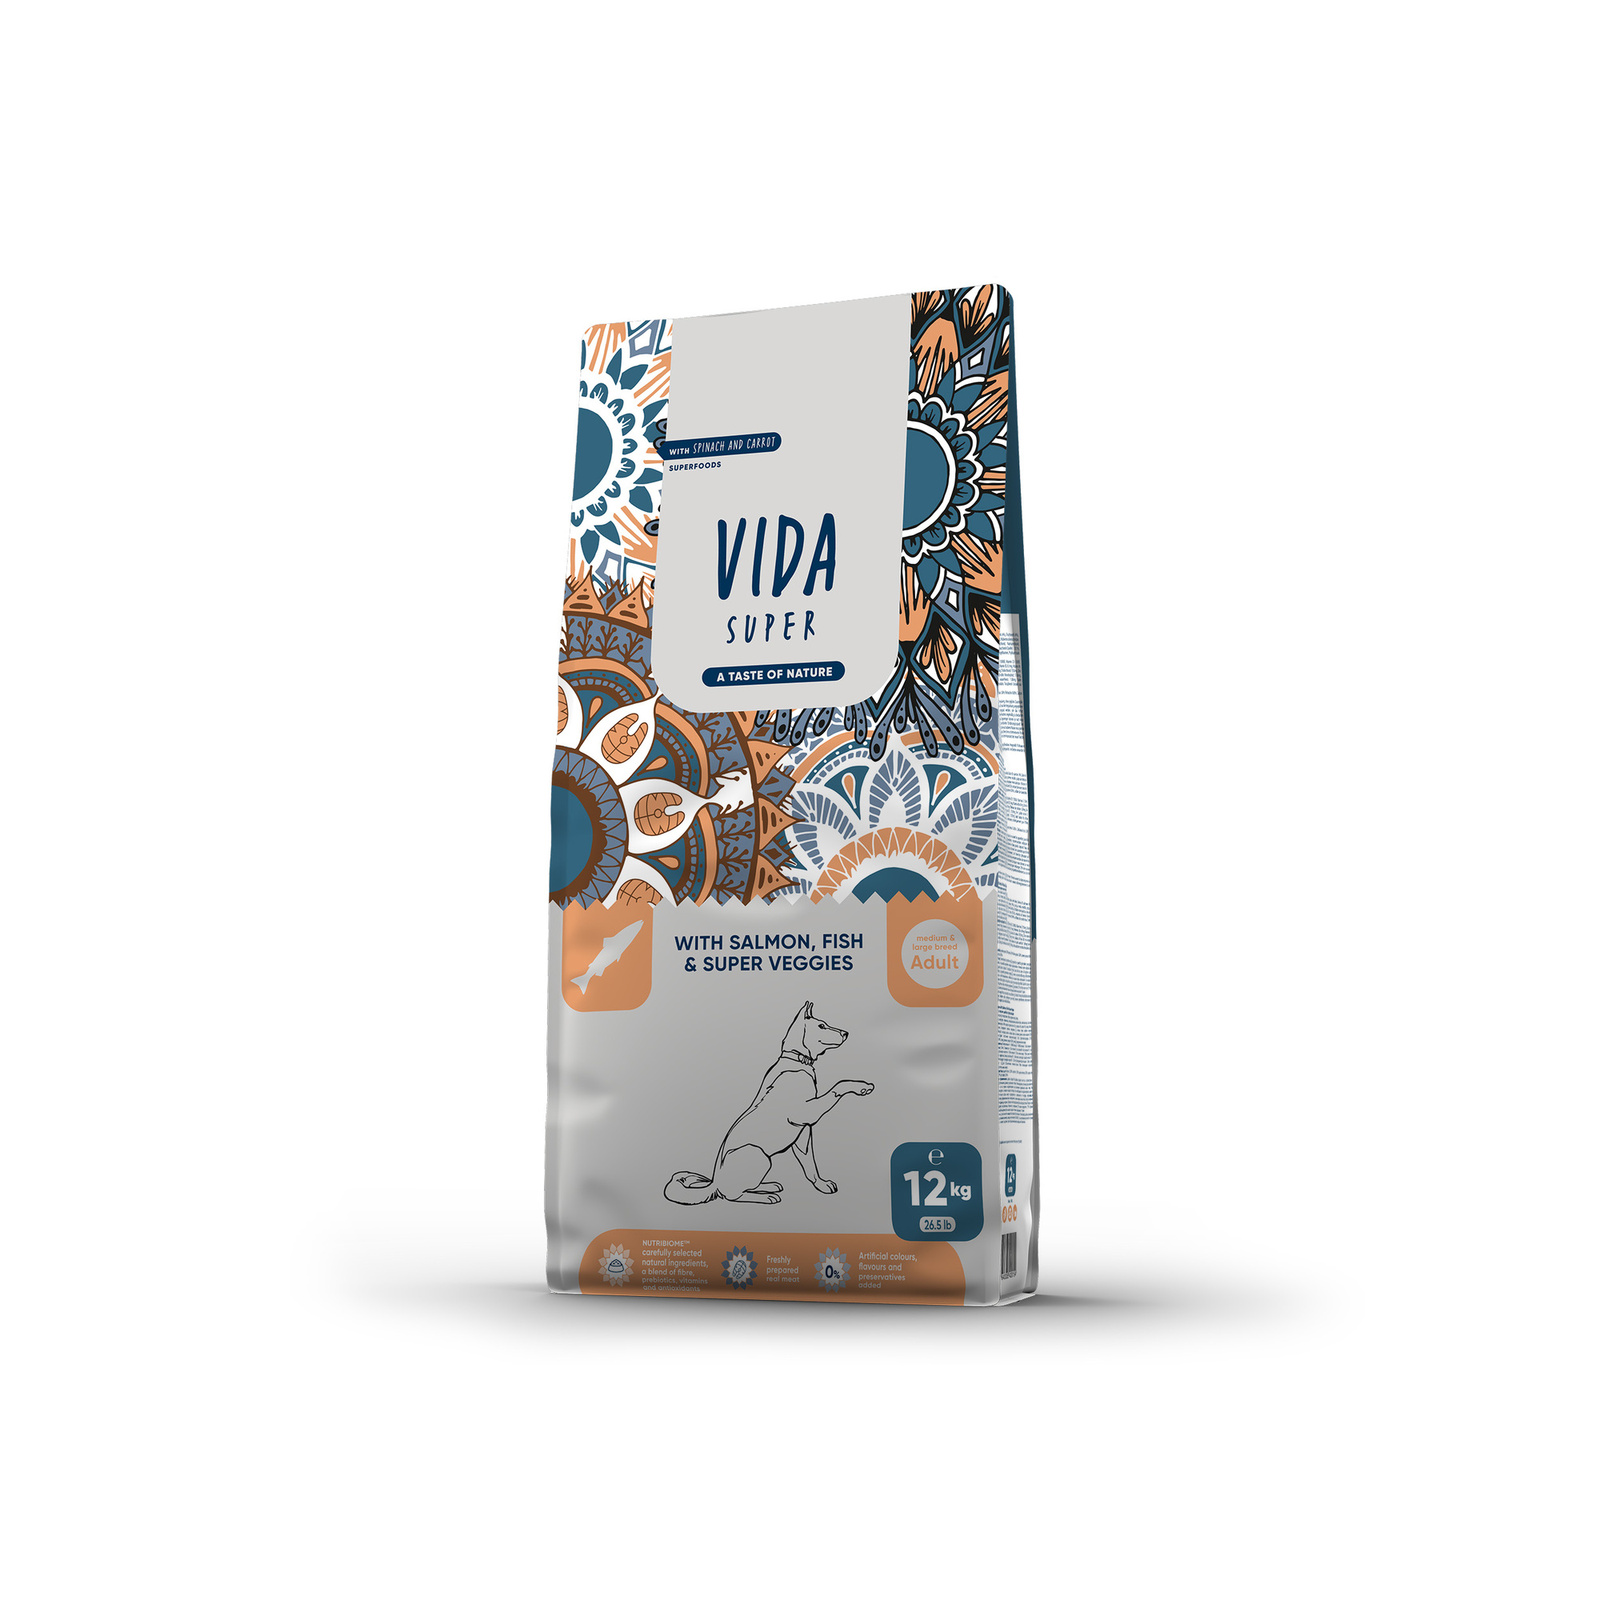 VIDA Super VIDA Super корм для взрослых собак средних и крупных пород с лососем, рыбой и овощами (2 кг)